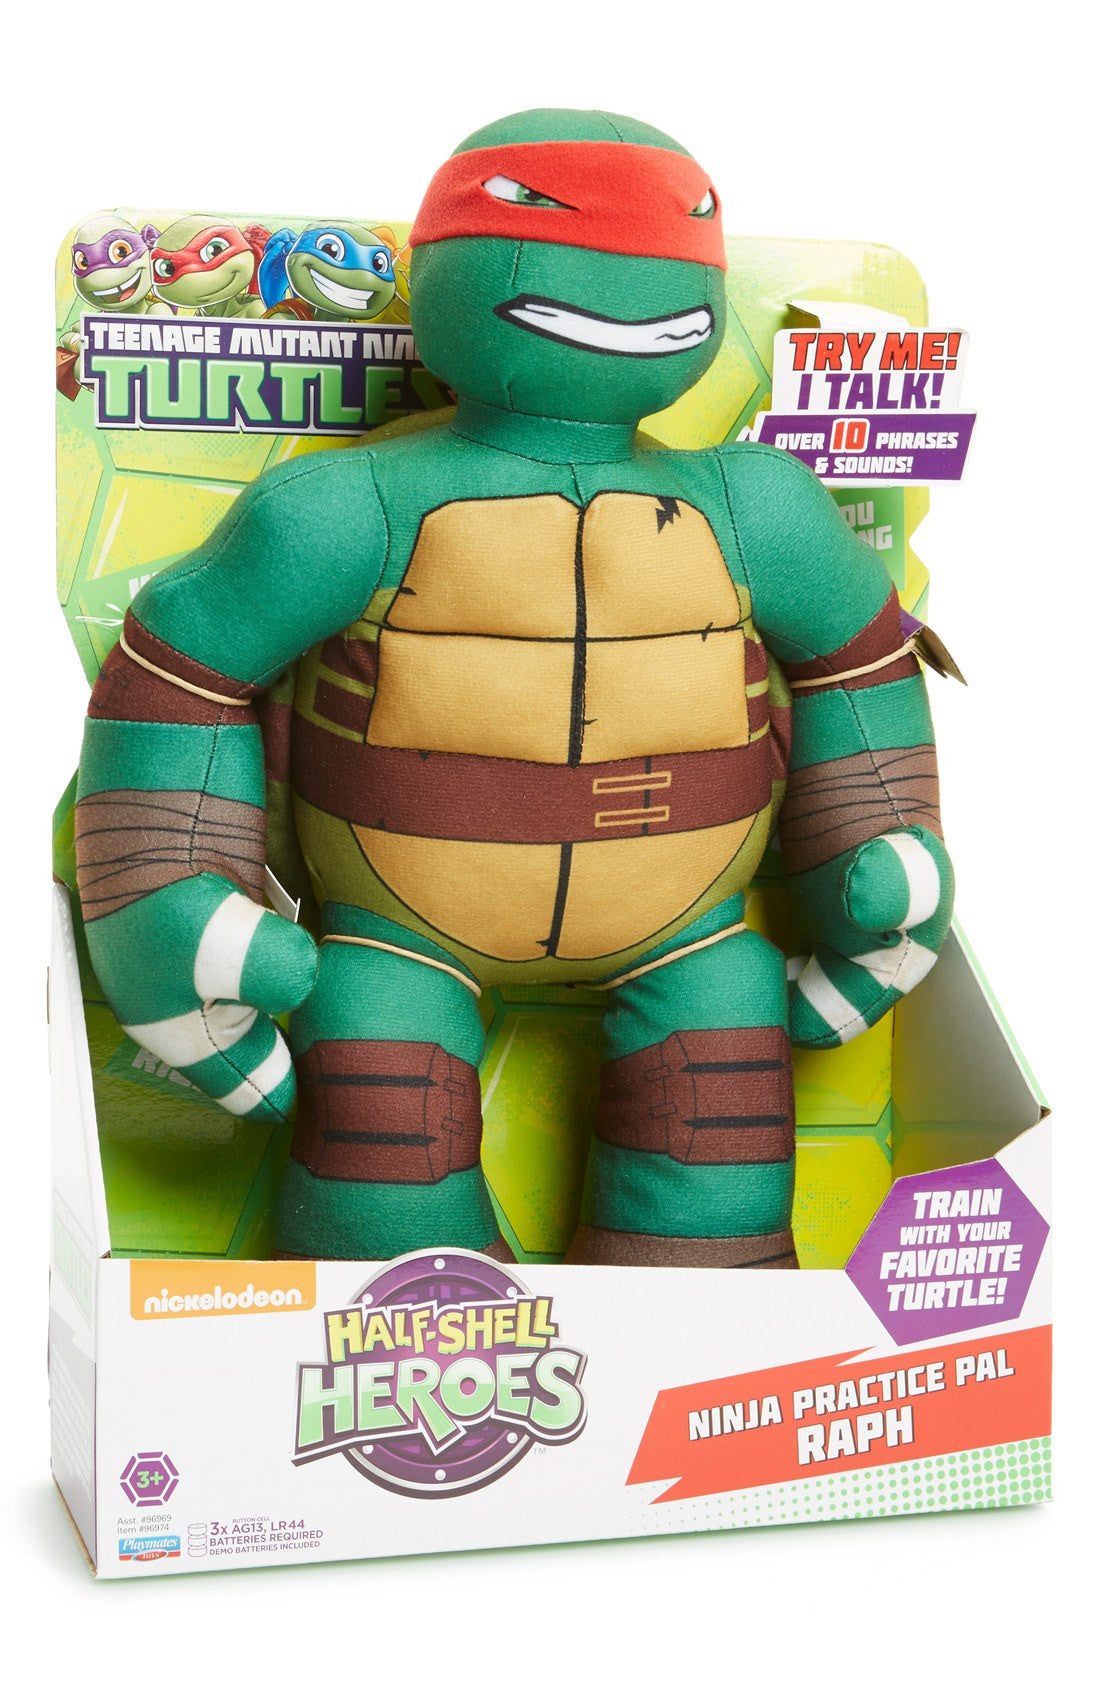 Leonardo Nickelodeon Teenage Mutant Ninja Turtle Plush Stuffed Toy 16